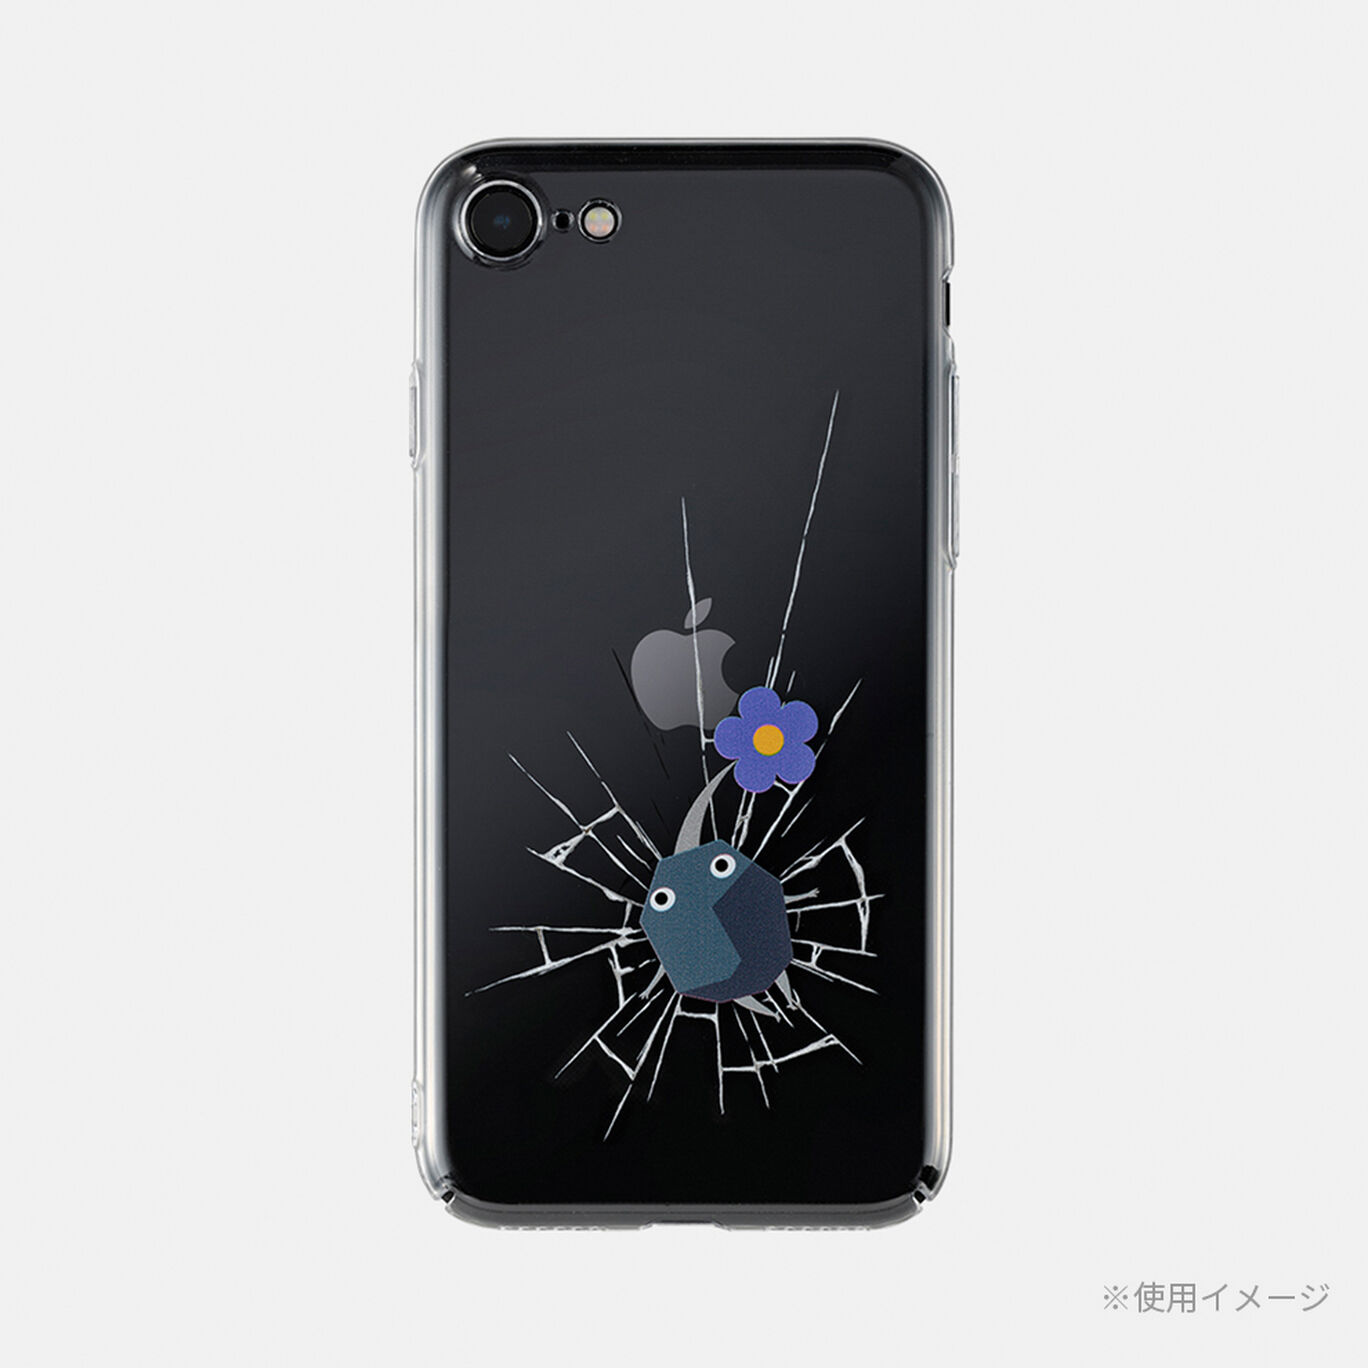 スマホカバー 体が硬い岩ピクミン iPhone SE 対応 PIKMIN【Nintendo TOKYO取り扱い商品】